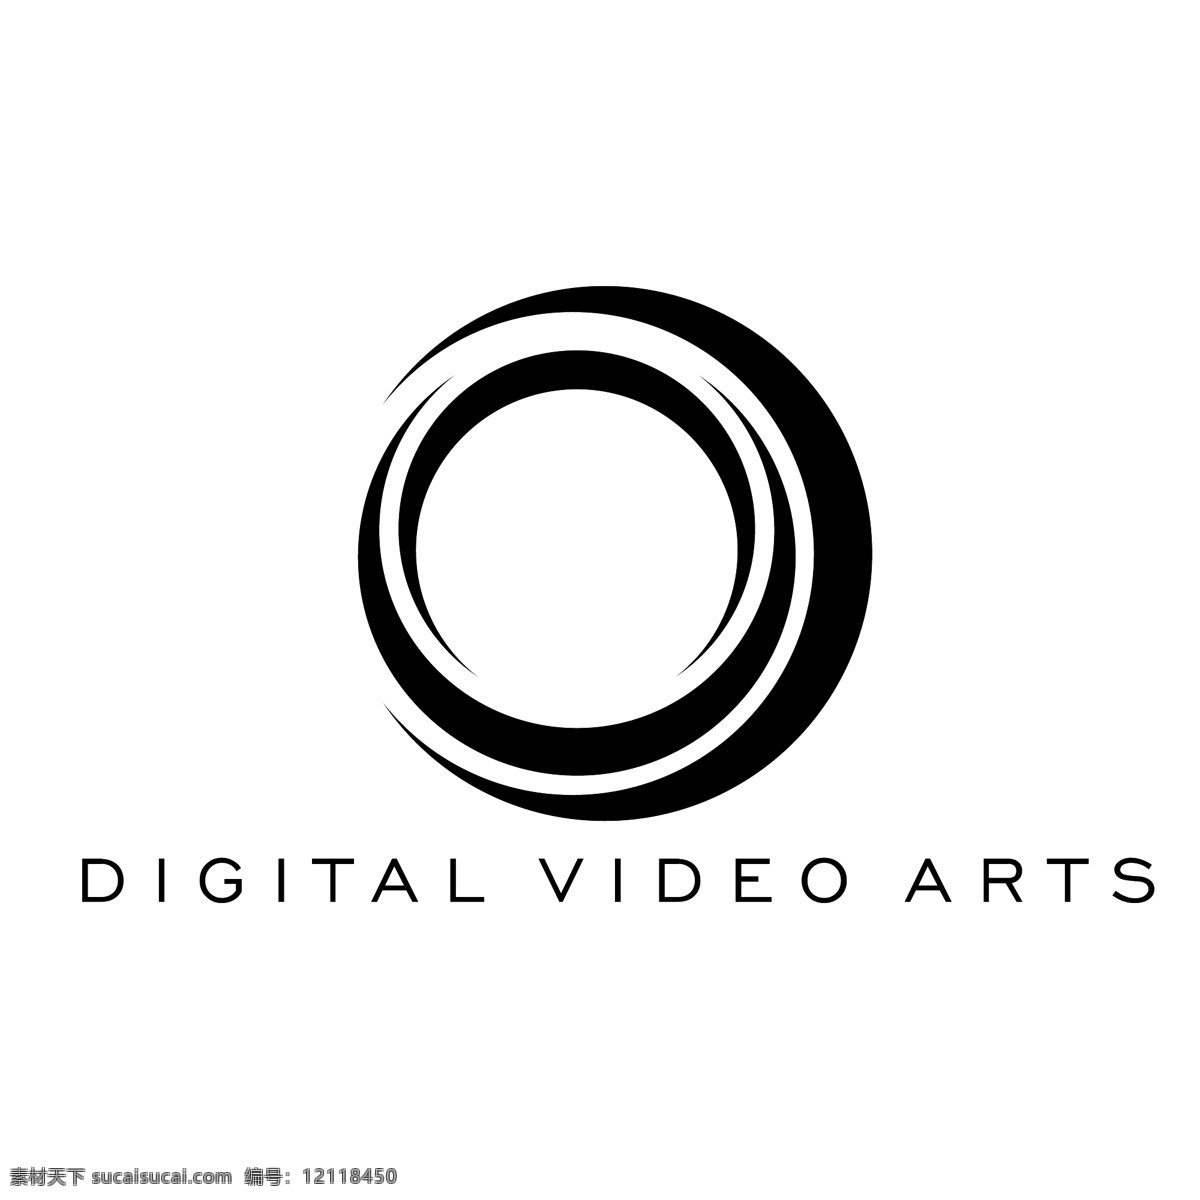 数字 视频 艺术 免费 影像 标志 psd源文件 logo设计